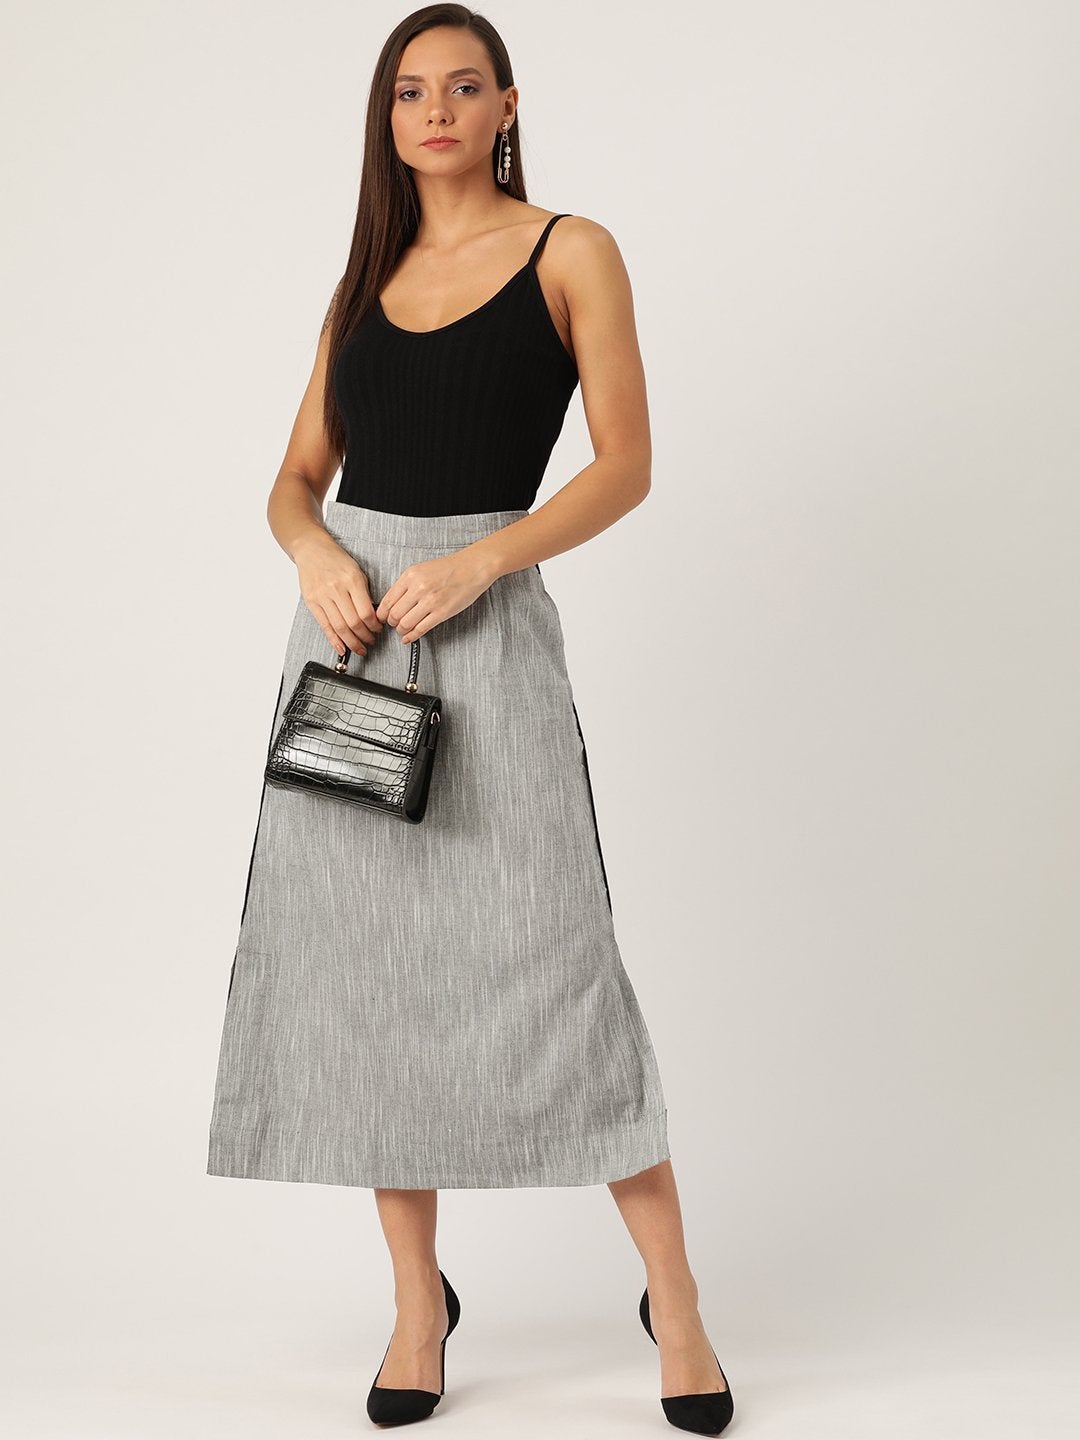 Women's Grey Skirt - InWeave